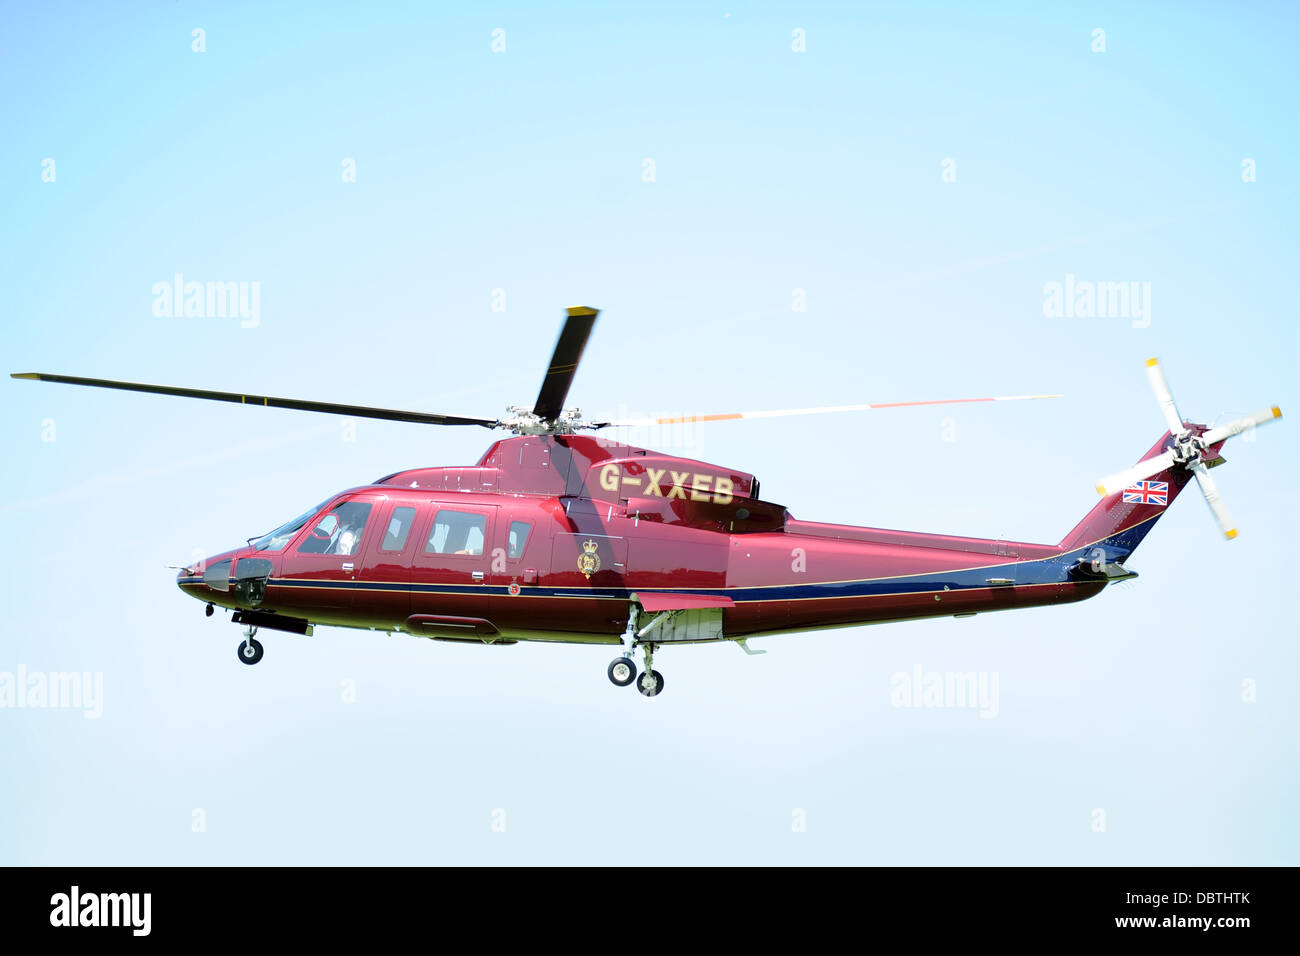 El helicóptero de la familia real, también conocida como la reina del helicóptero (vuelo) TQHF Sikorsky G-XXEA Foto de stock